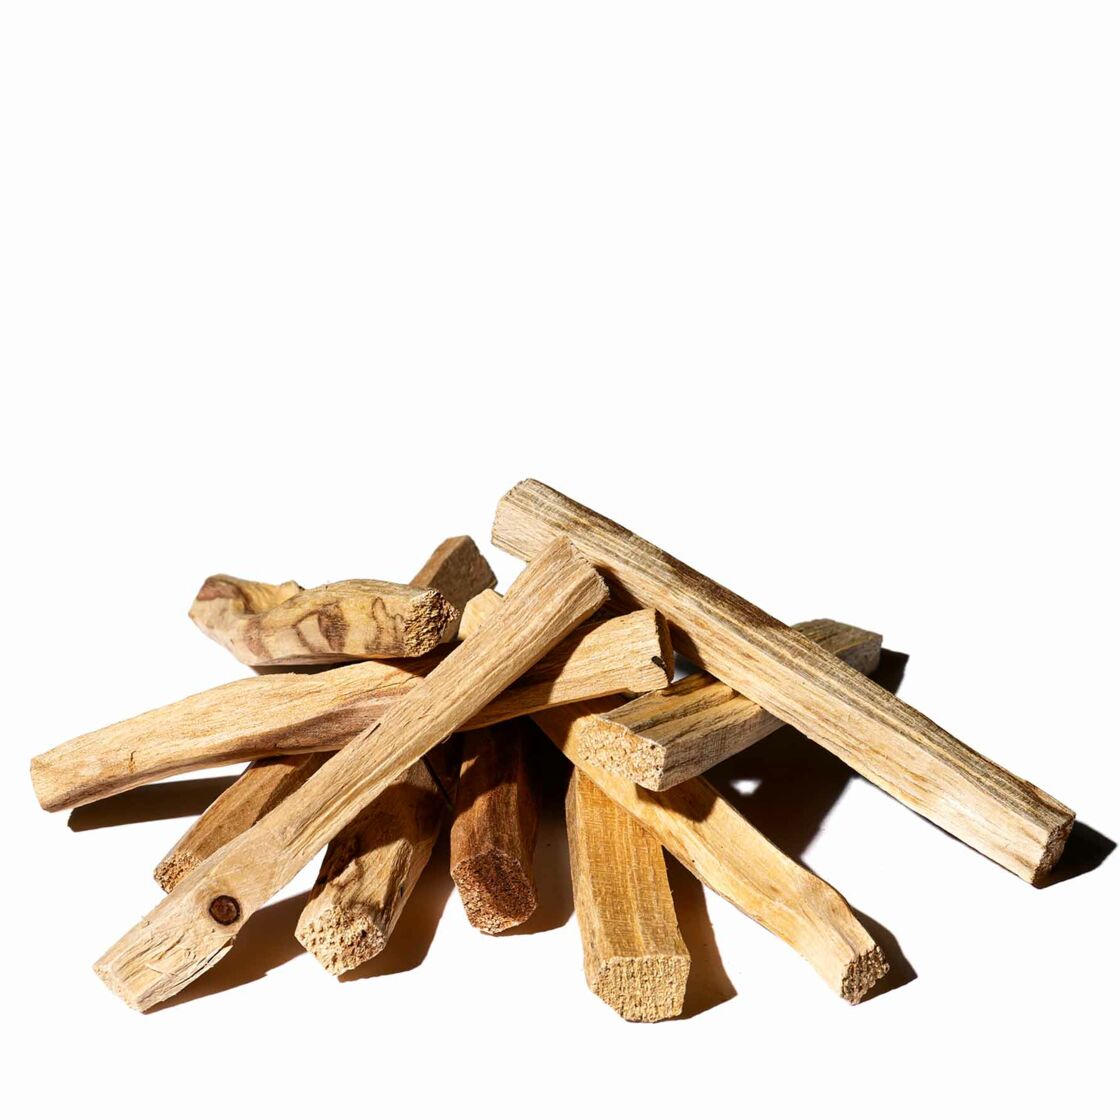 Palo santo wood to purify your home